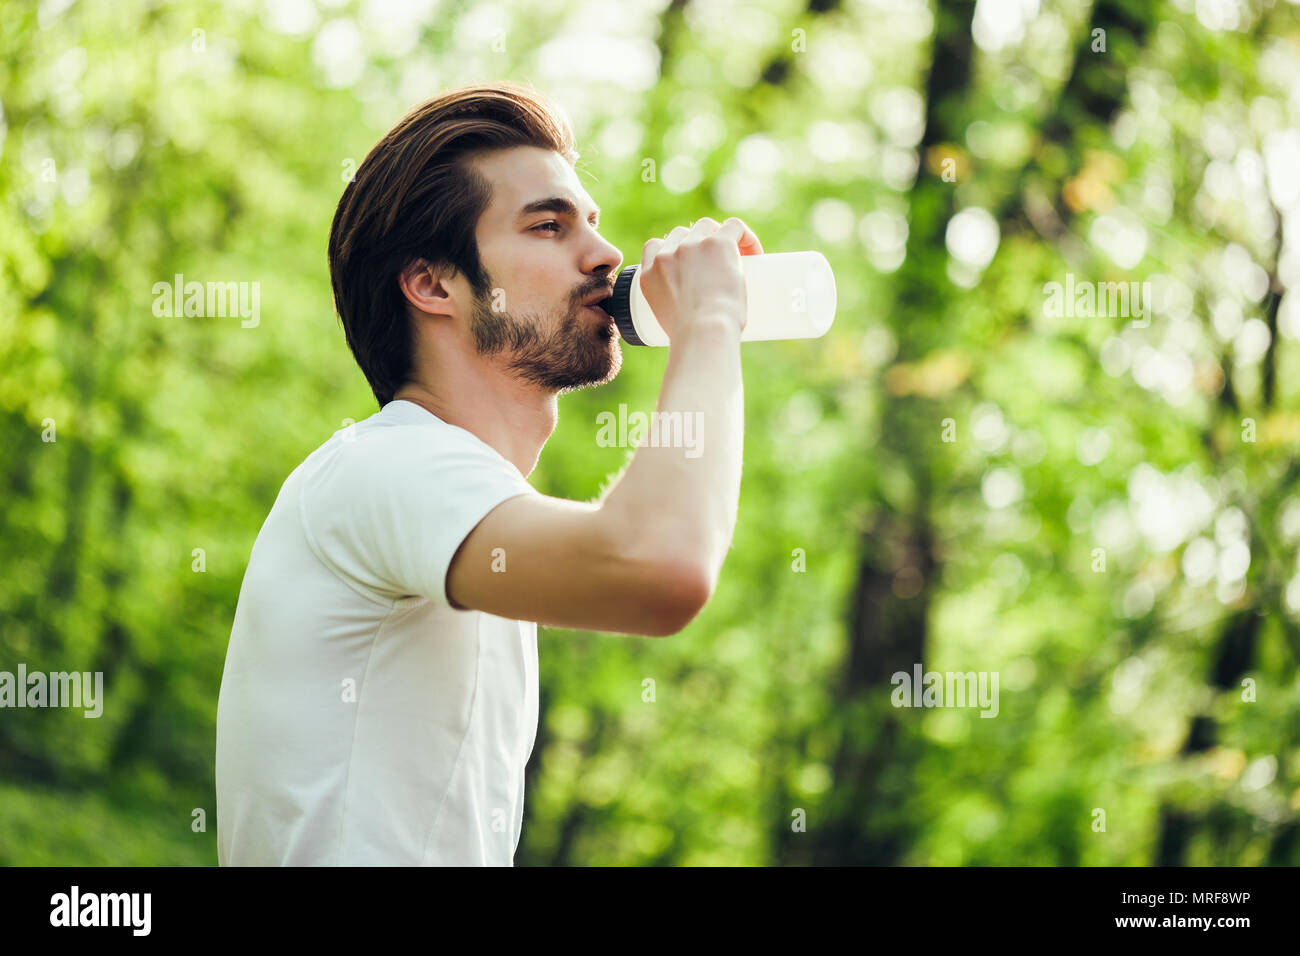 Junge Mann ist das Trainieren im Park. Er ist Trinkwasser. Stockfoto